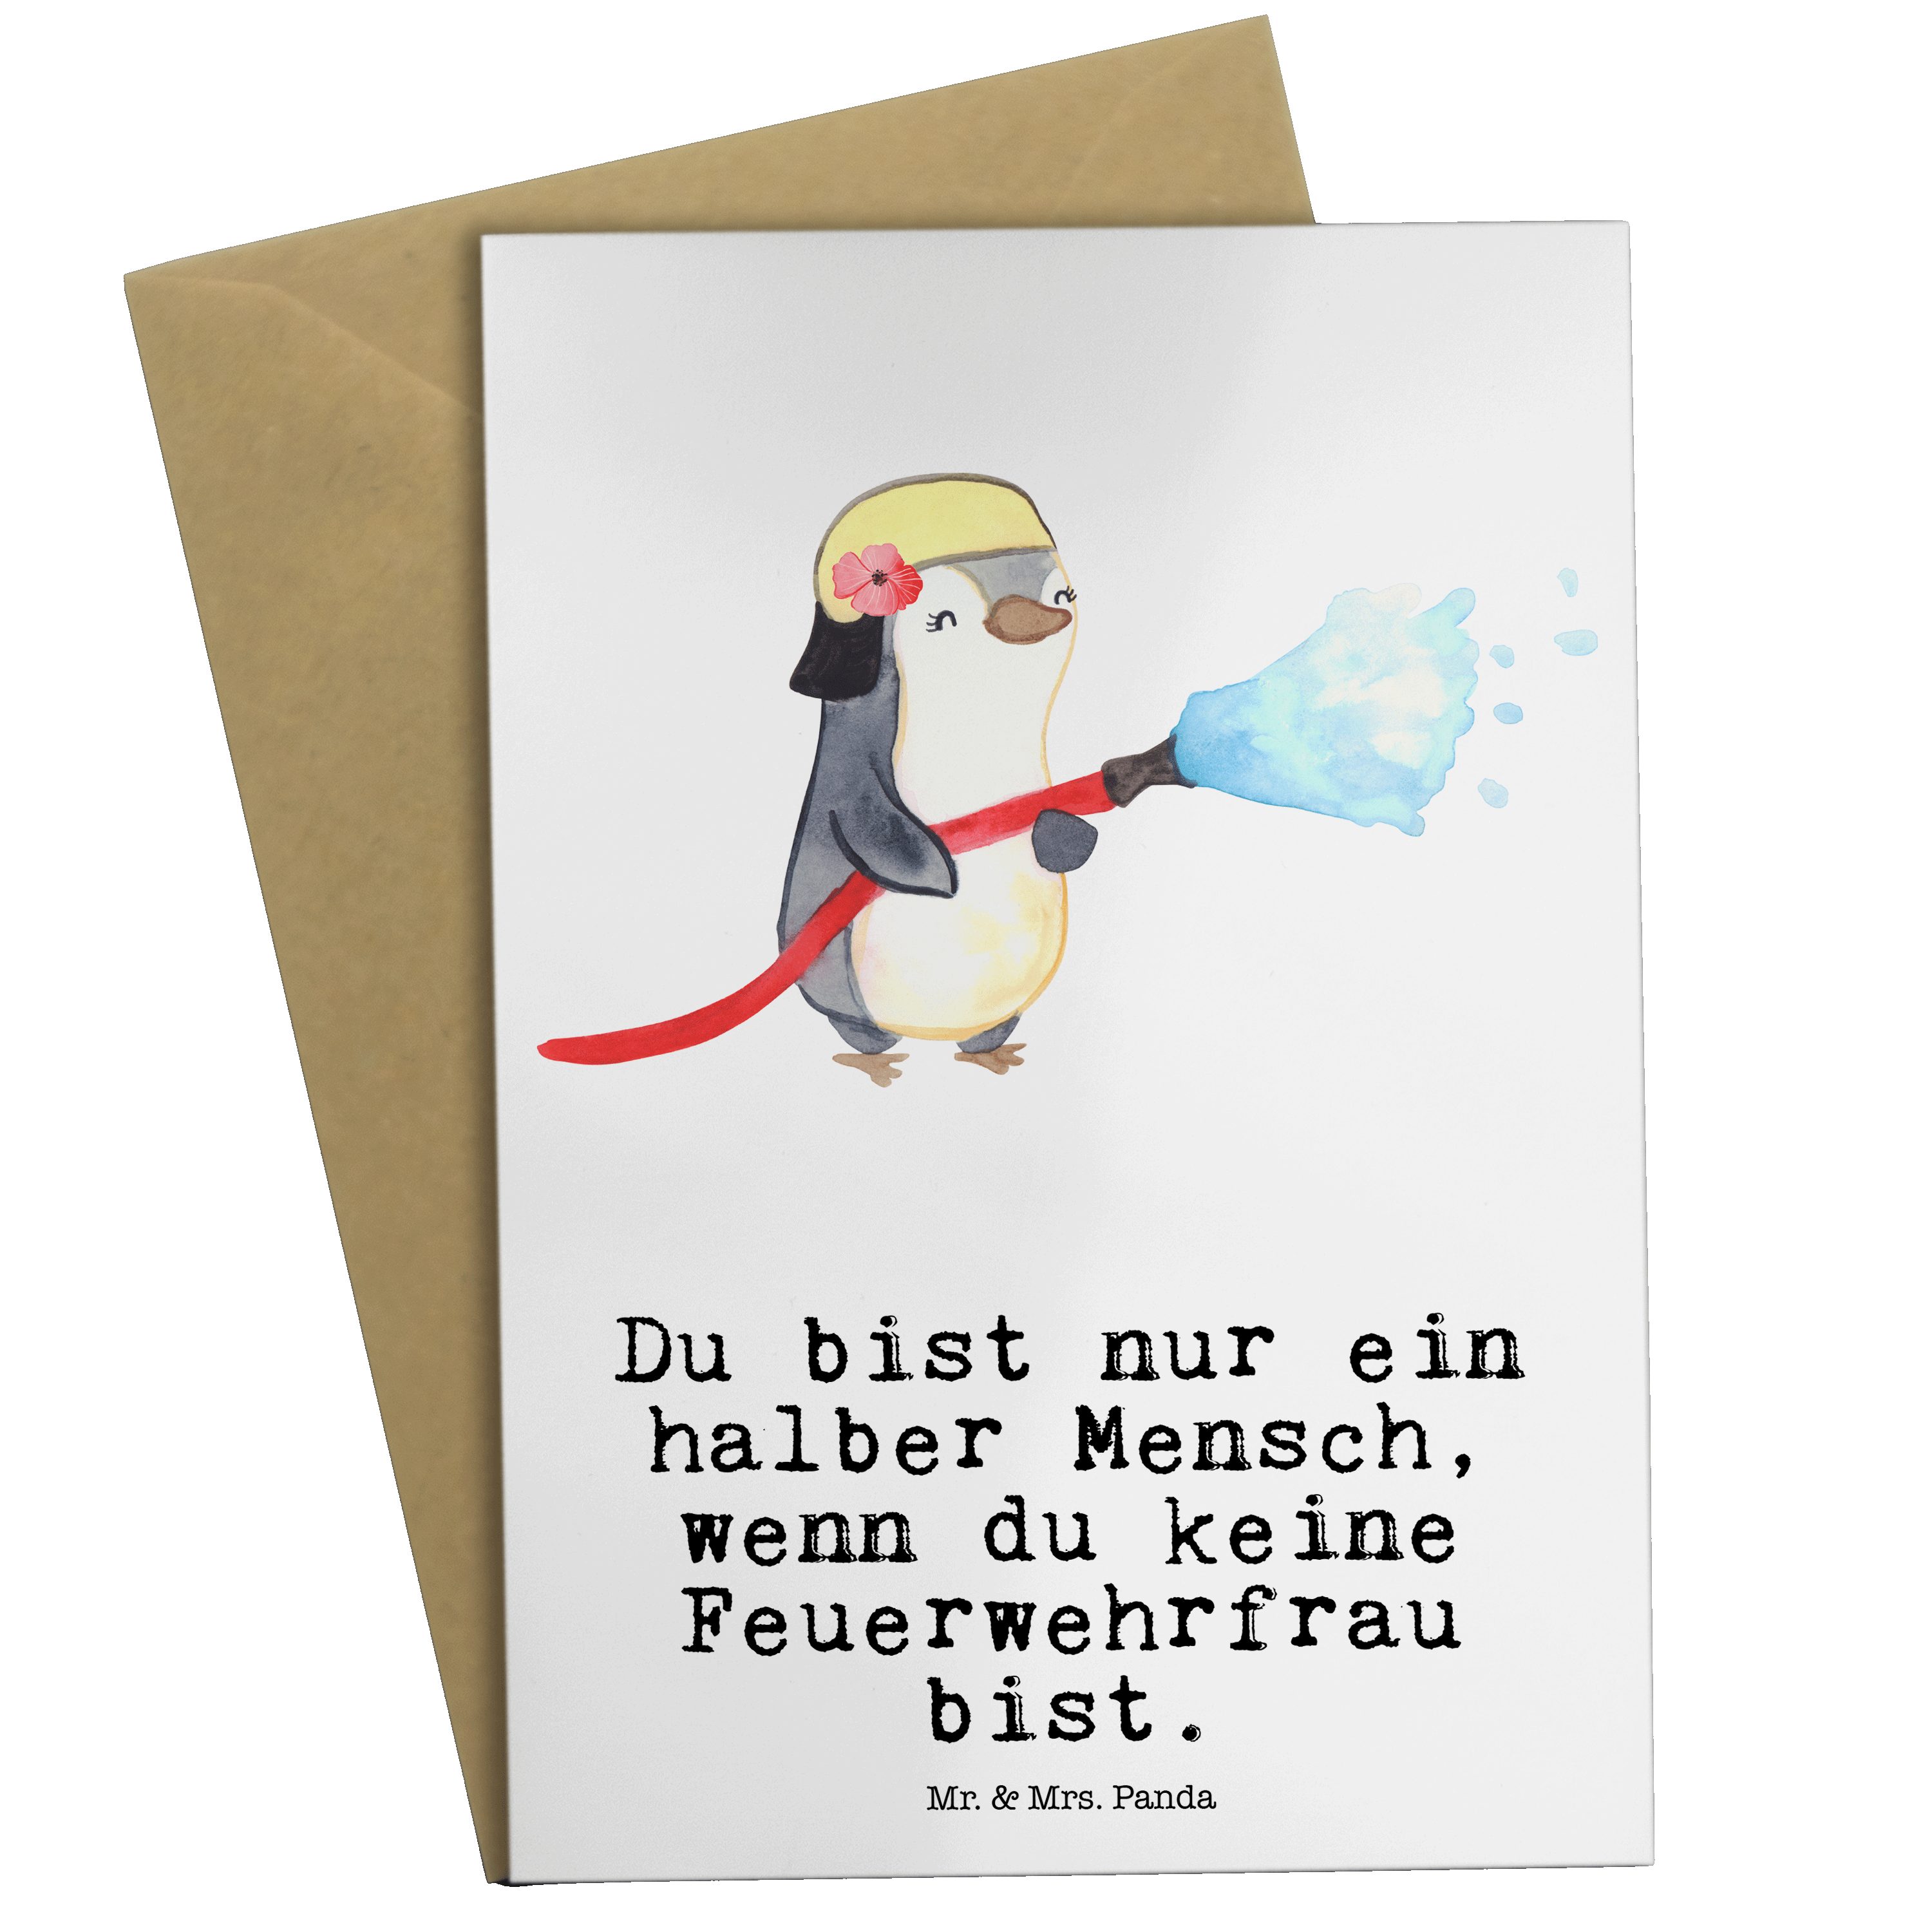 Mr. & Mrs. Panda Grußkarte Feuerwehrfrau mit Herz - Weiß - Geschenk, Einladungskarte, Feuerwehrh